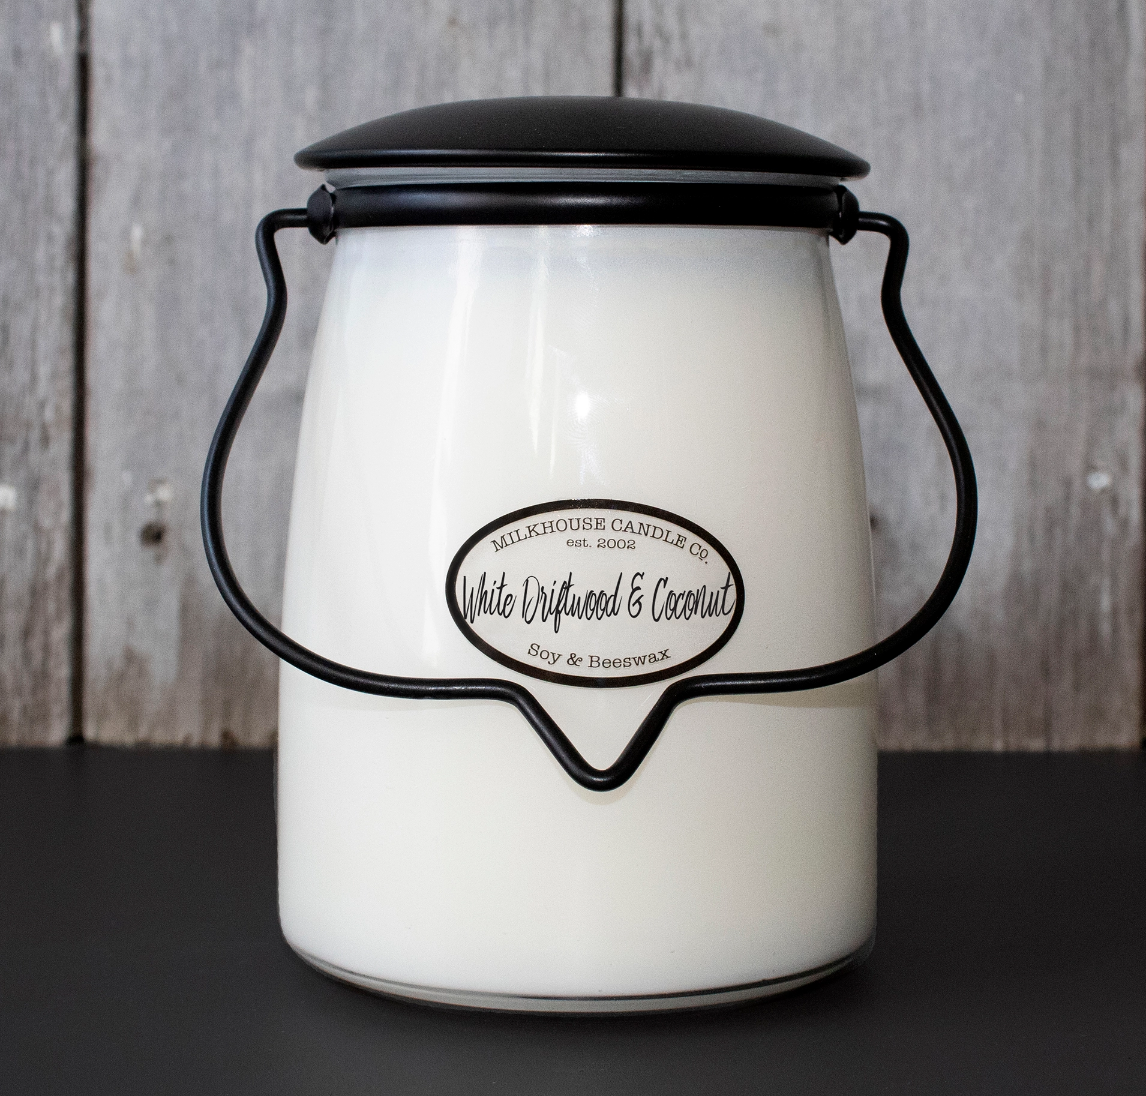 Milkhouse Candle - Citrus & Lavender 16 oz Butter Jar